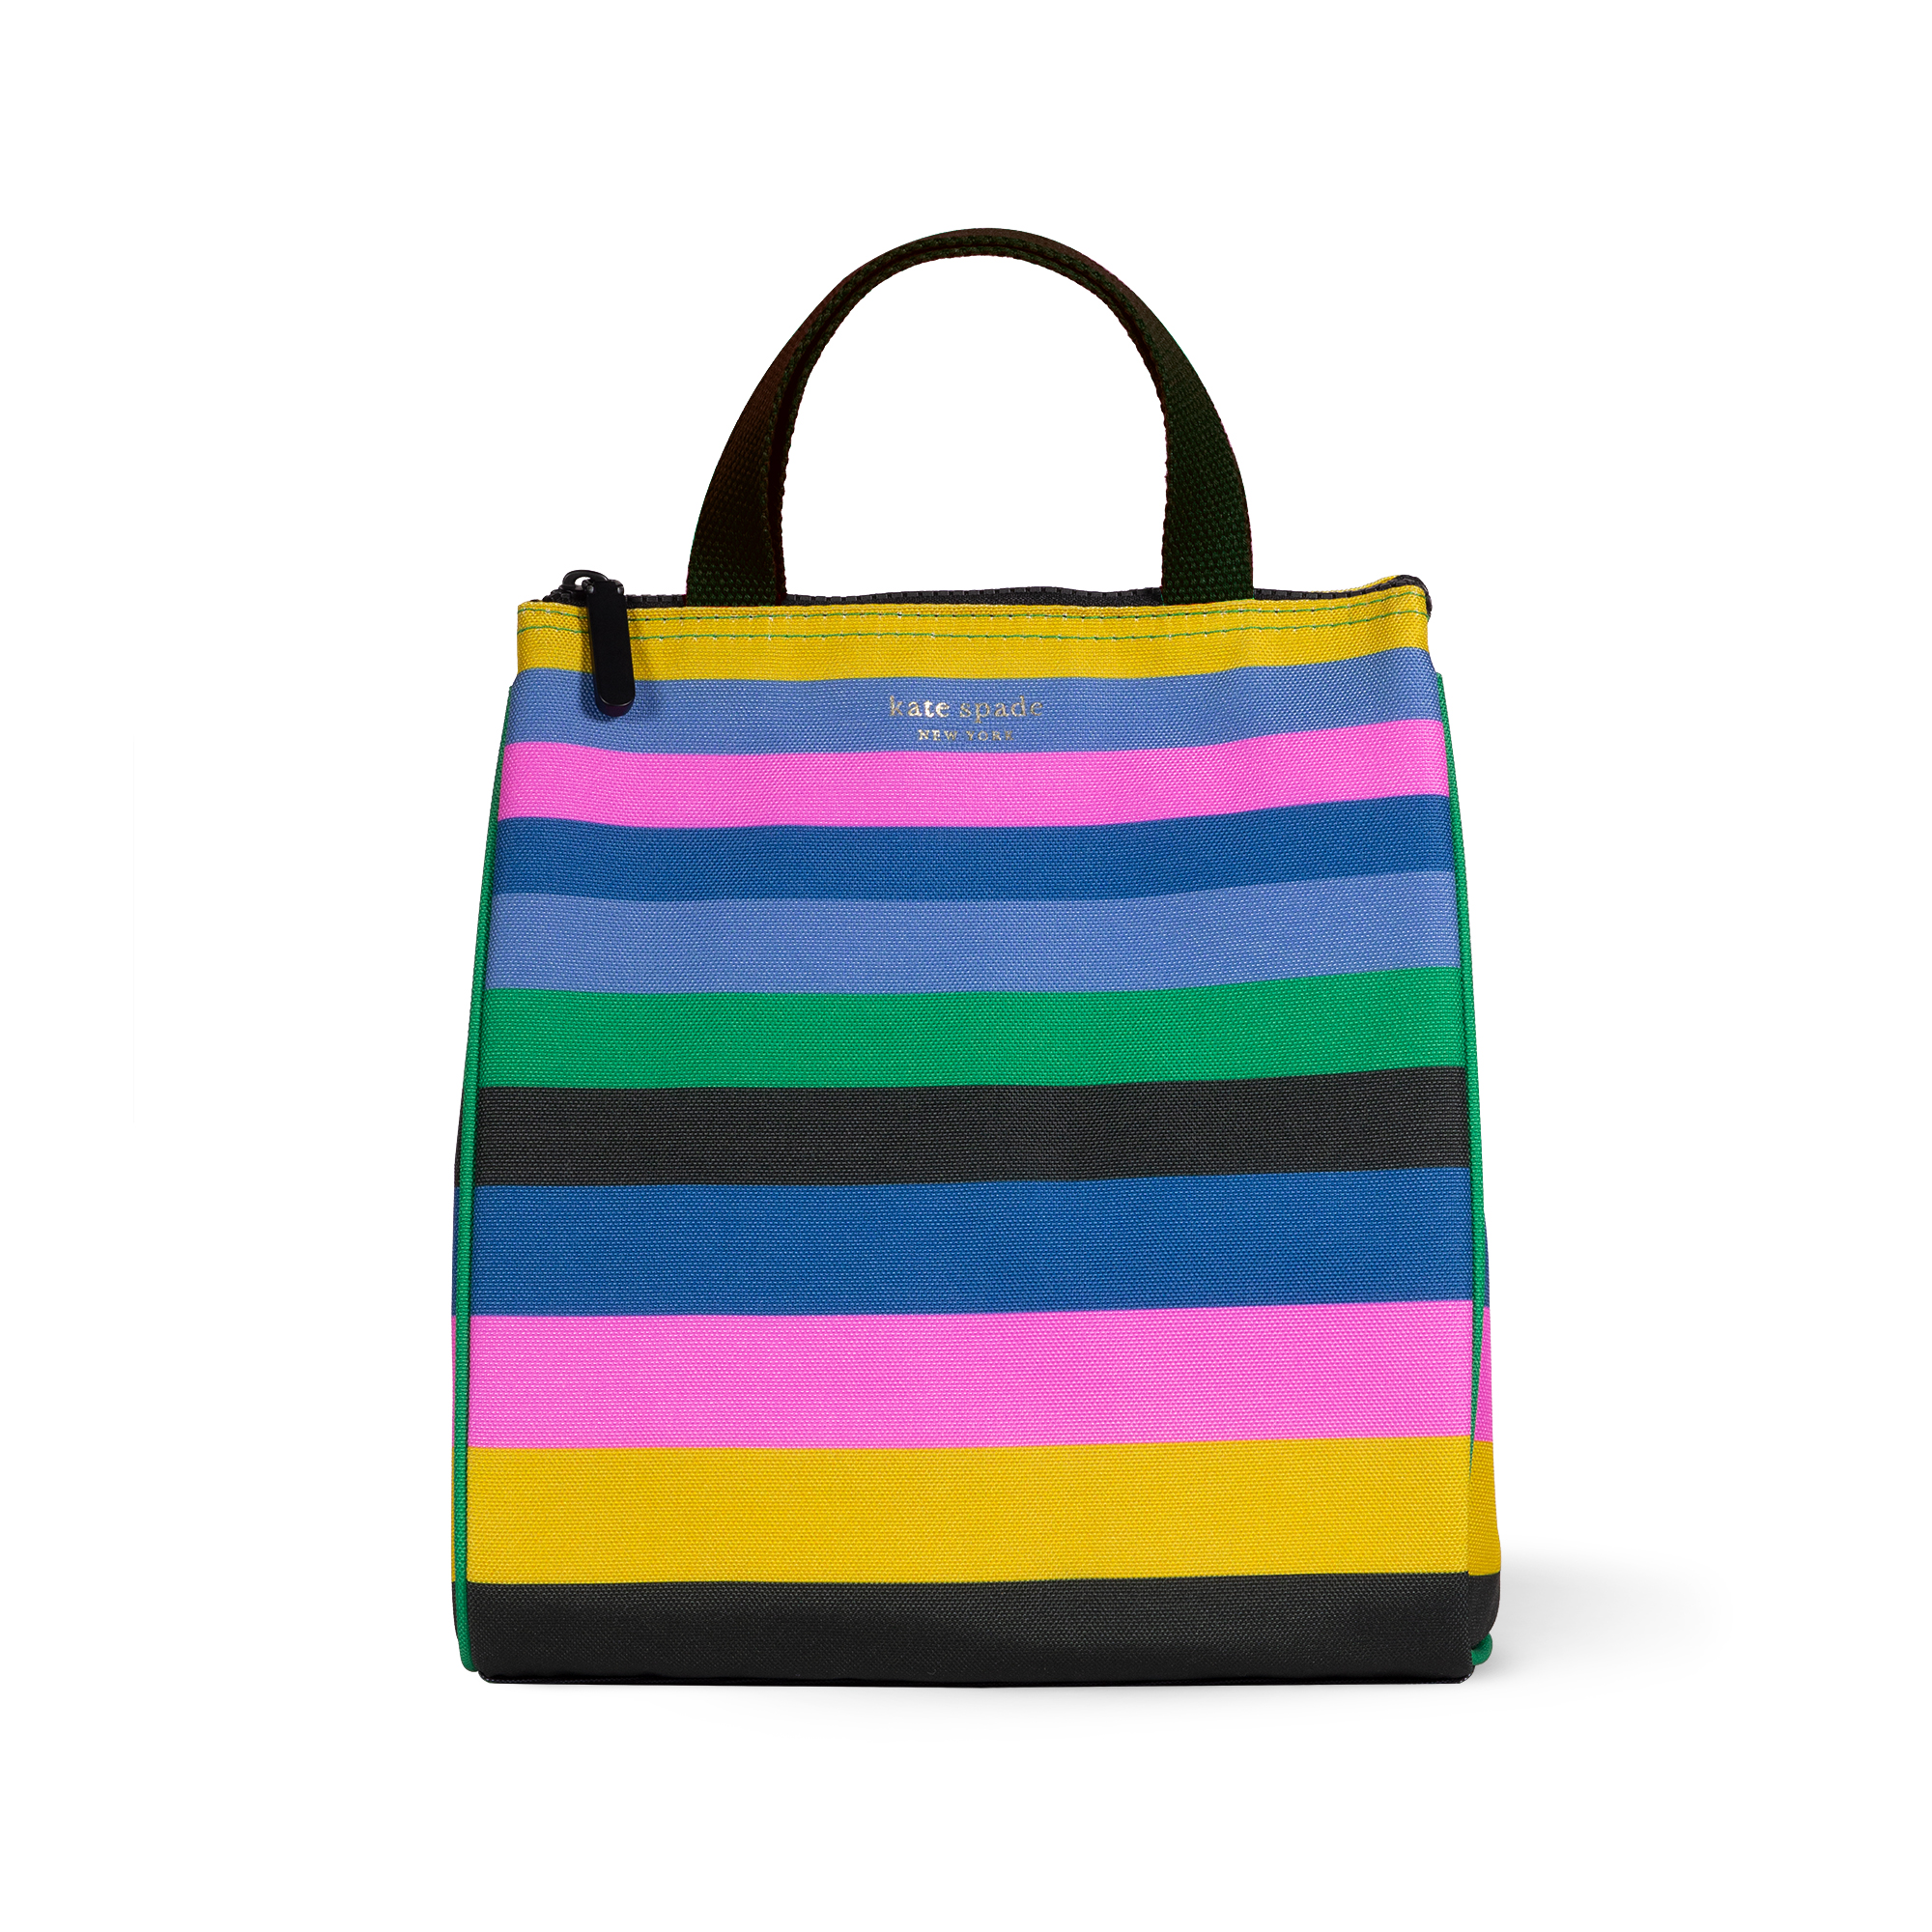 Kate Spade New York Stripes Multi Color Black Shoulder Bag One Size - 74%  off | ThredUp